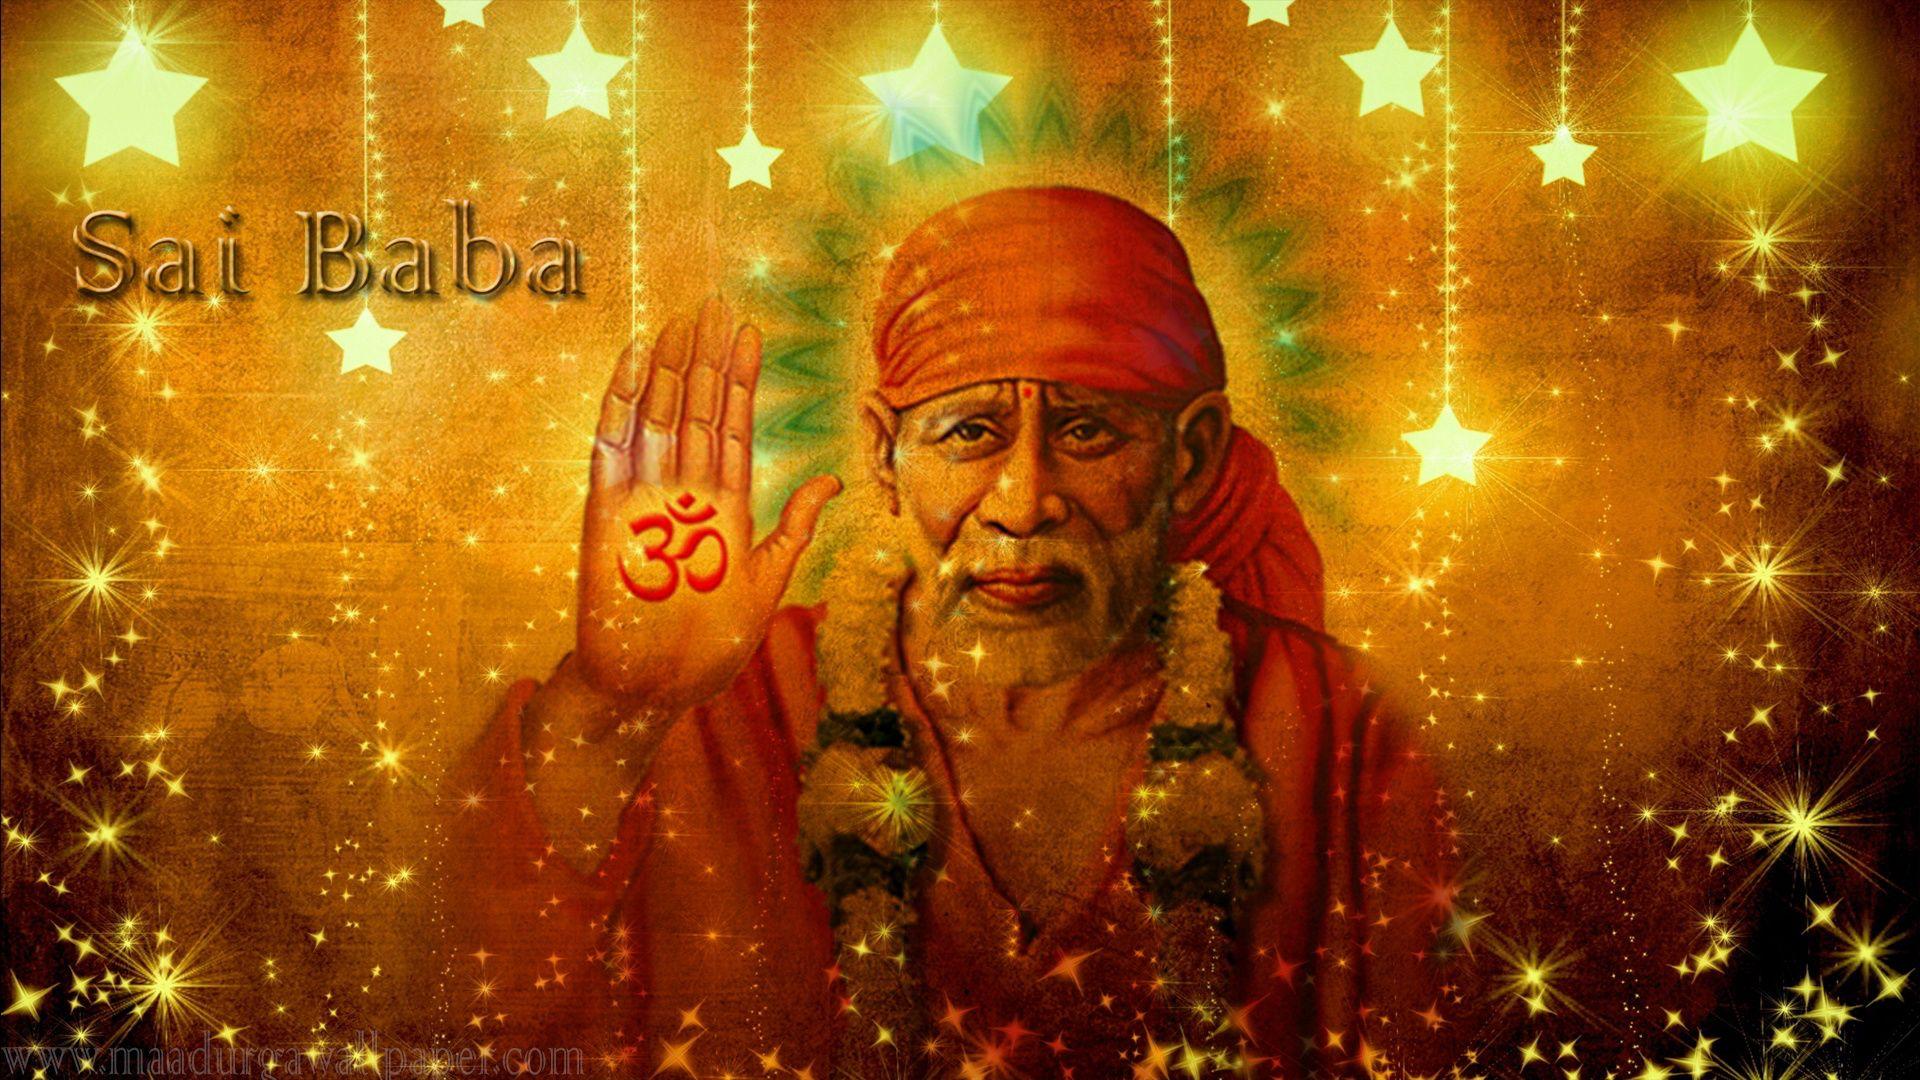 Sai baba Wallpaper. Sai Baba image. Shirdi Sai Baba HD